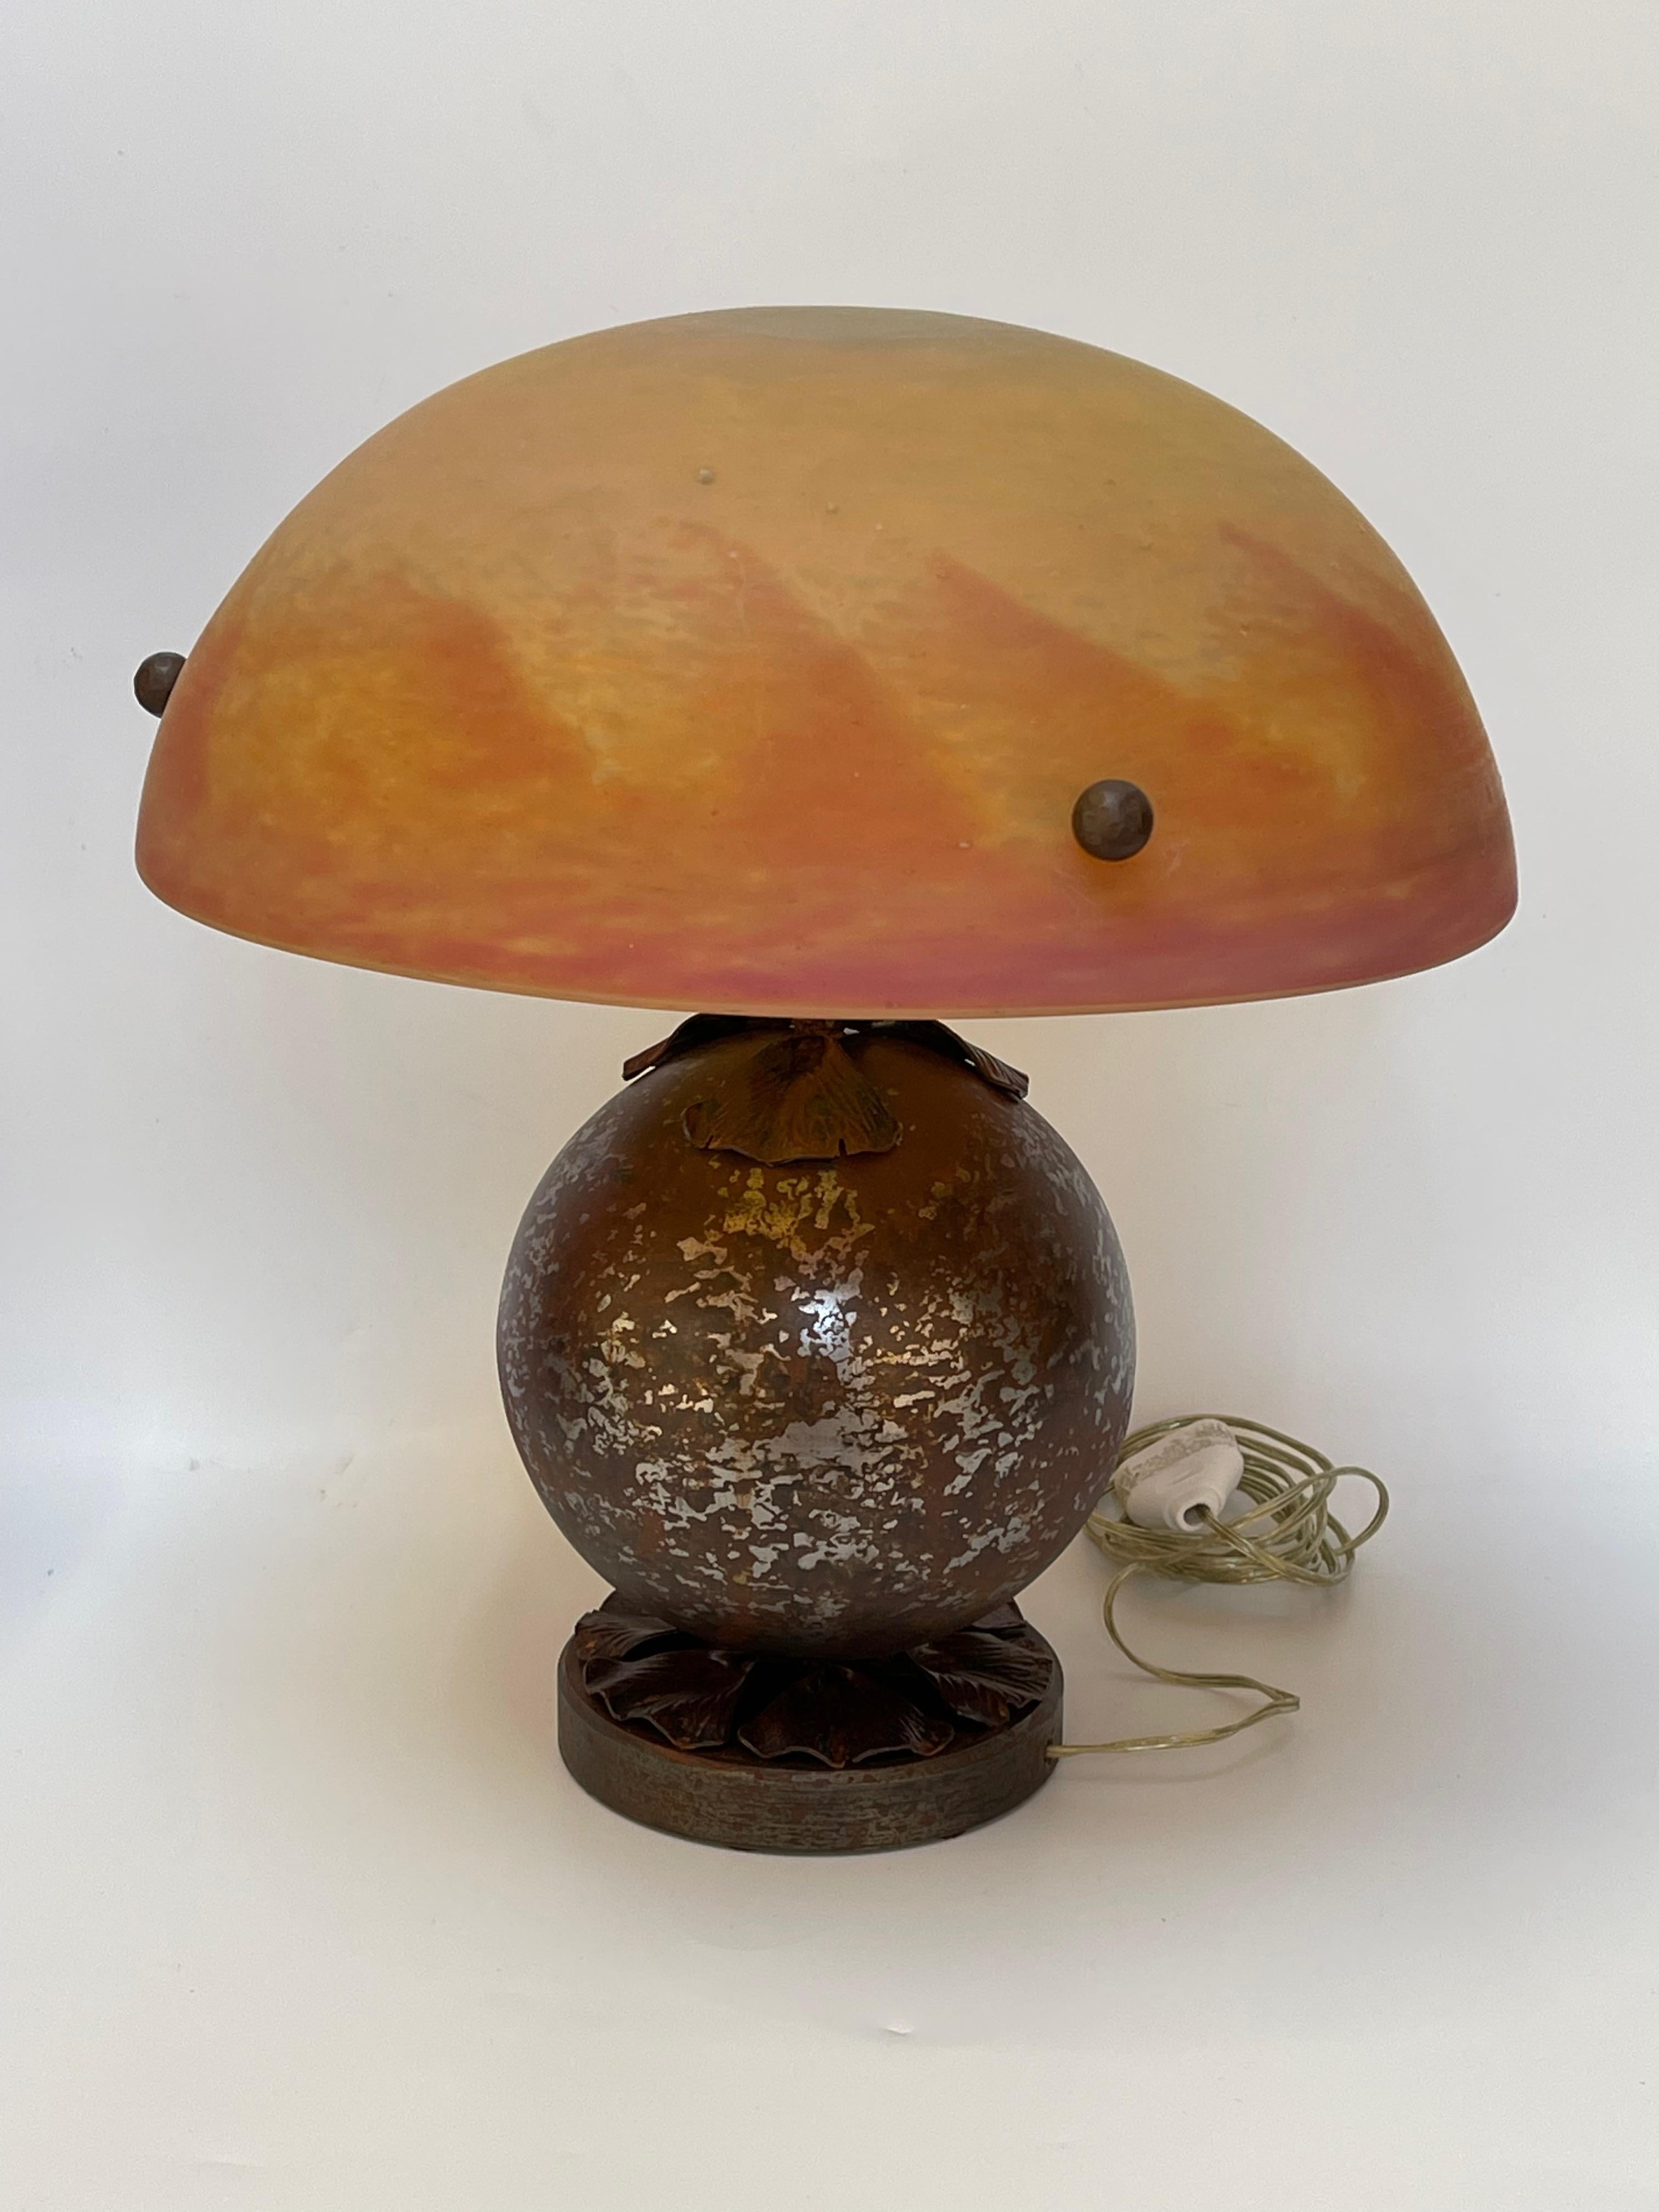 Art-Deco-Lampe um 1930 aus Schmiedeeisen mit Ginkgo-Biloba-Blättern und Glaswaren von Daum Nancy elektrifiziert und in perfektem Zustand.
Signiert auf dem Sockel L Katona
Signiert auf dem Glas Daum Nancy.
Durchmesser: Verrerie 30 cm Sockel 12